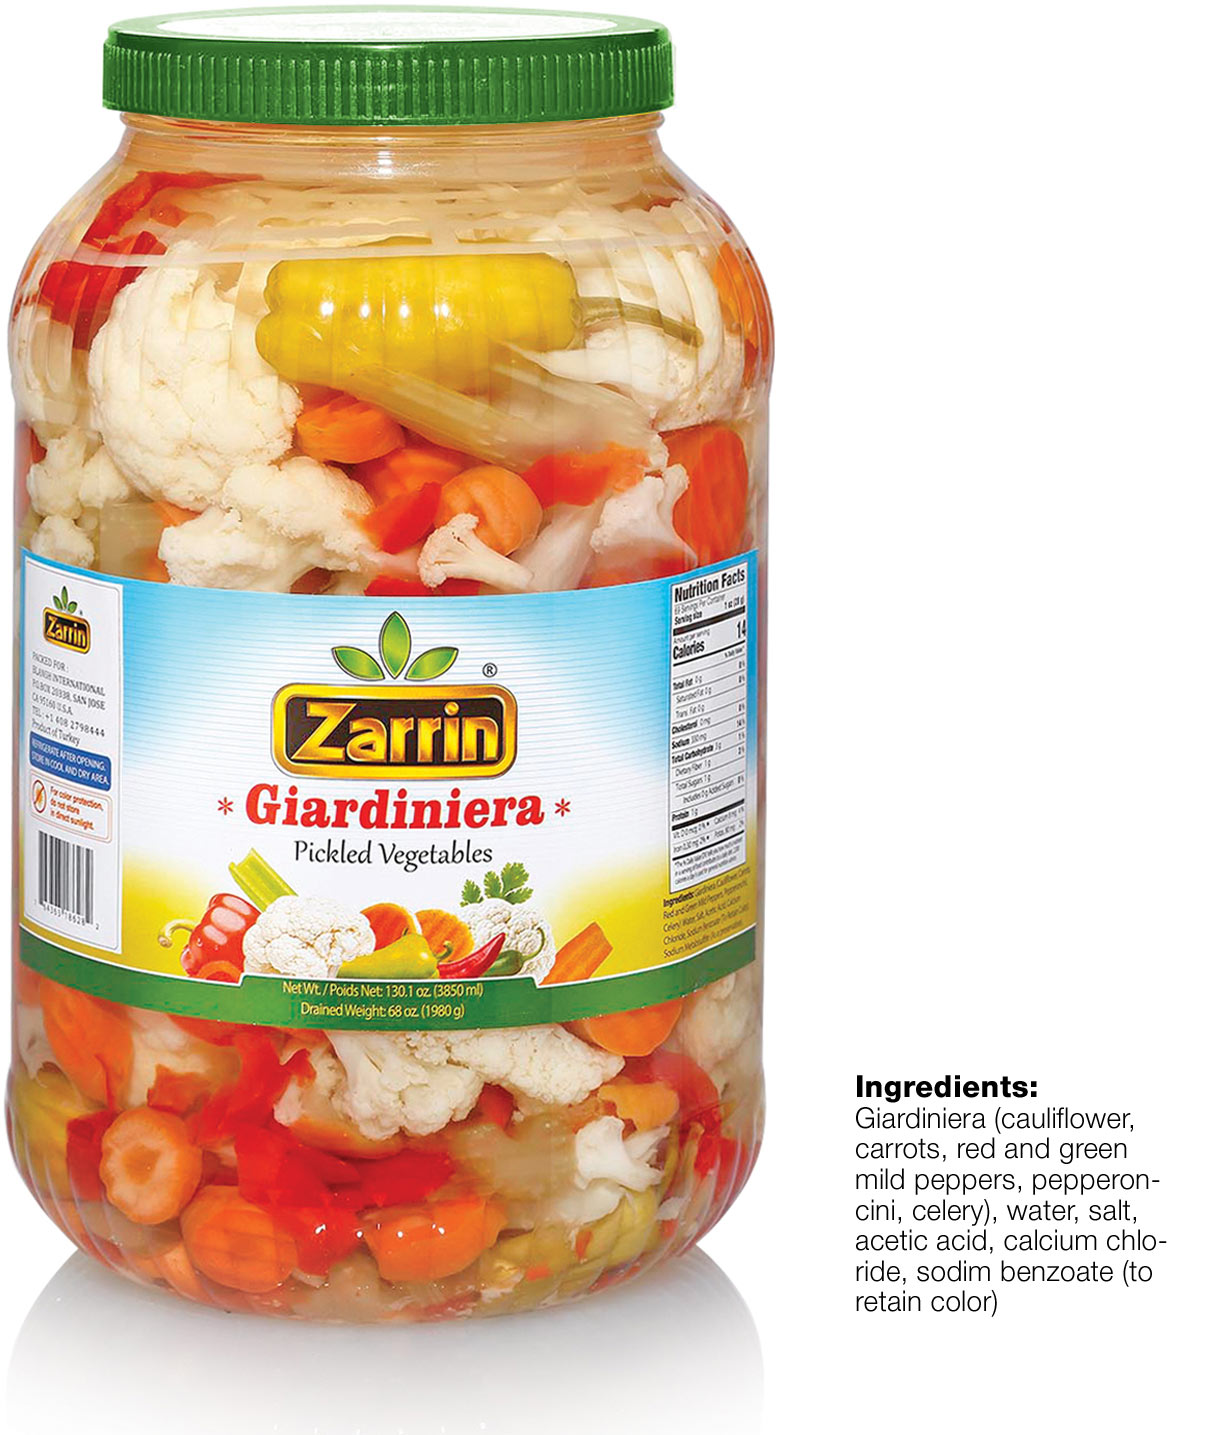 Zarrin giardiniera in PET with 130.1 oz.